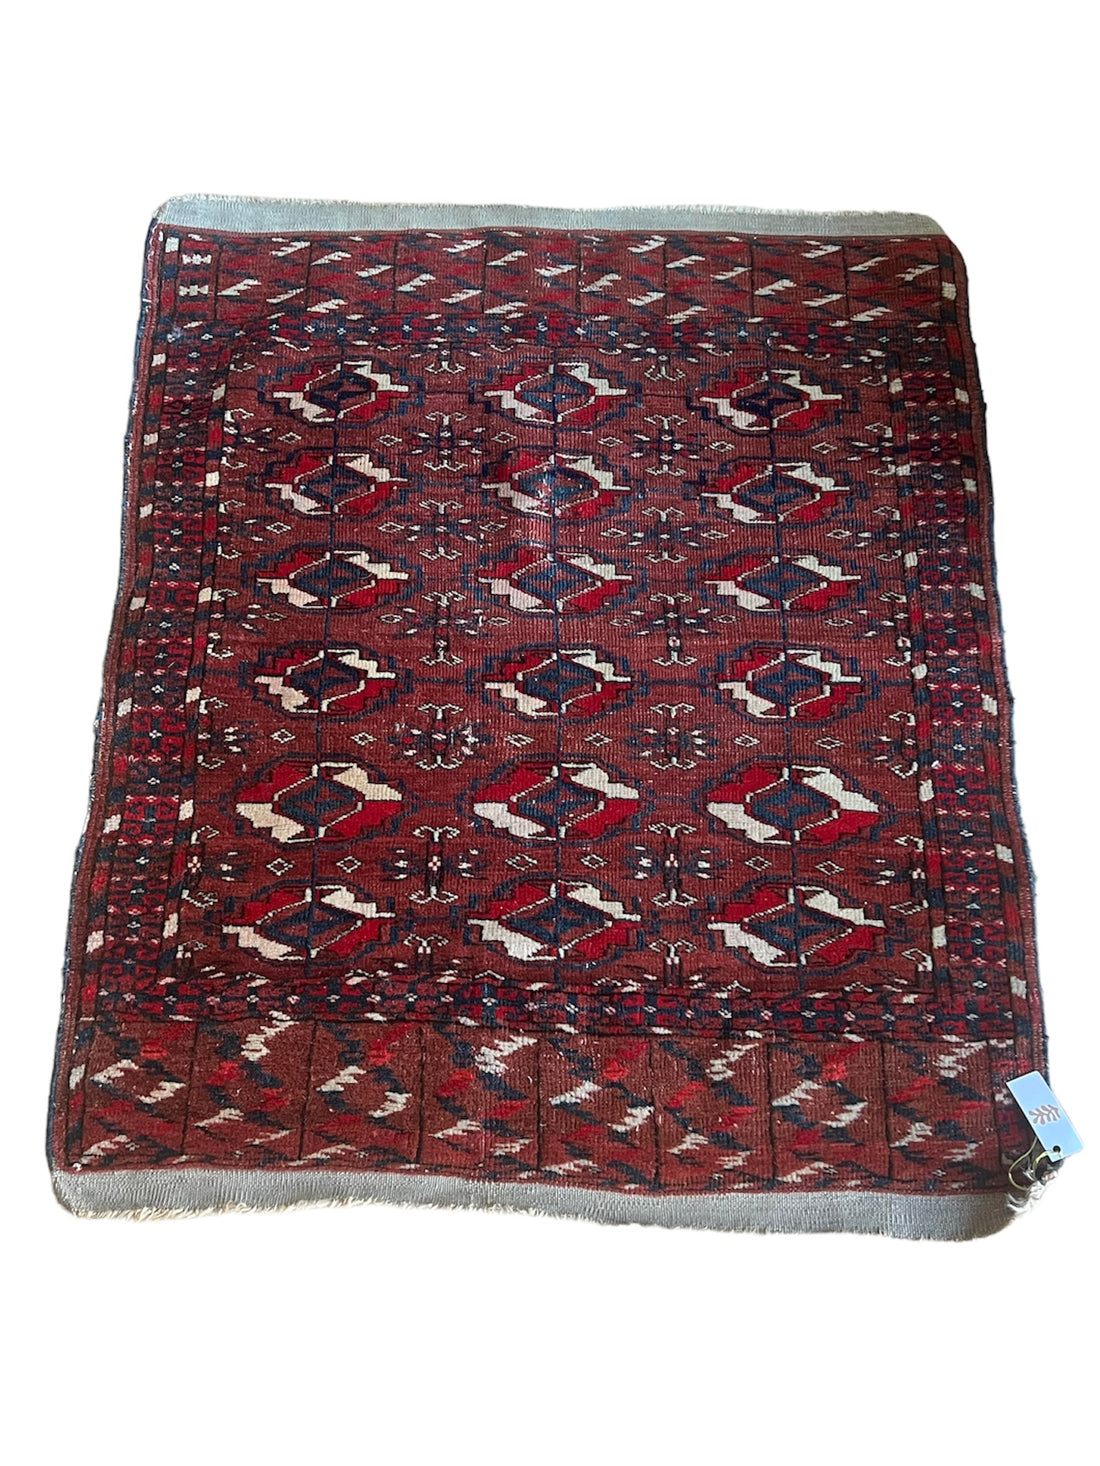 Turkomen Vintage Carpet